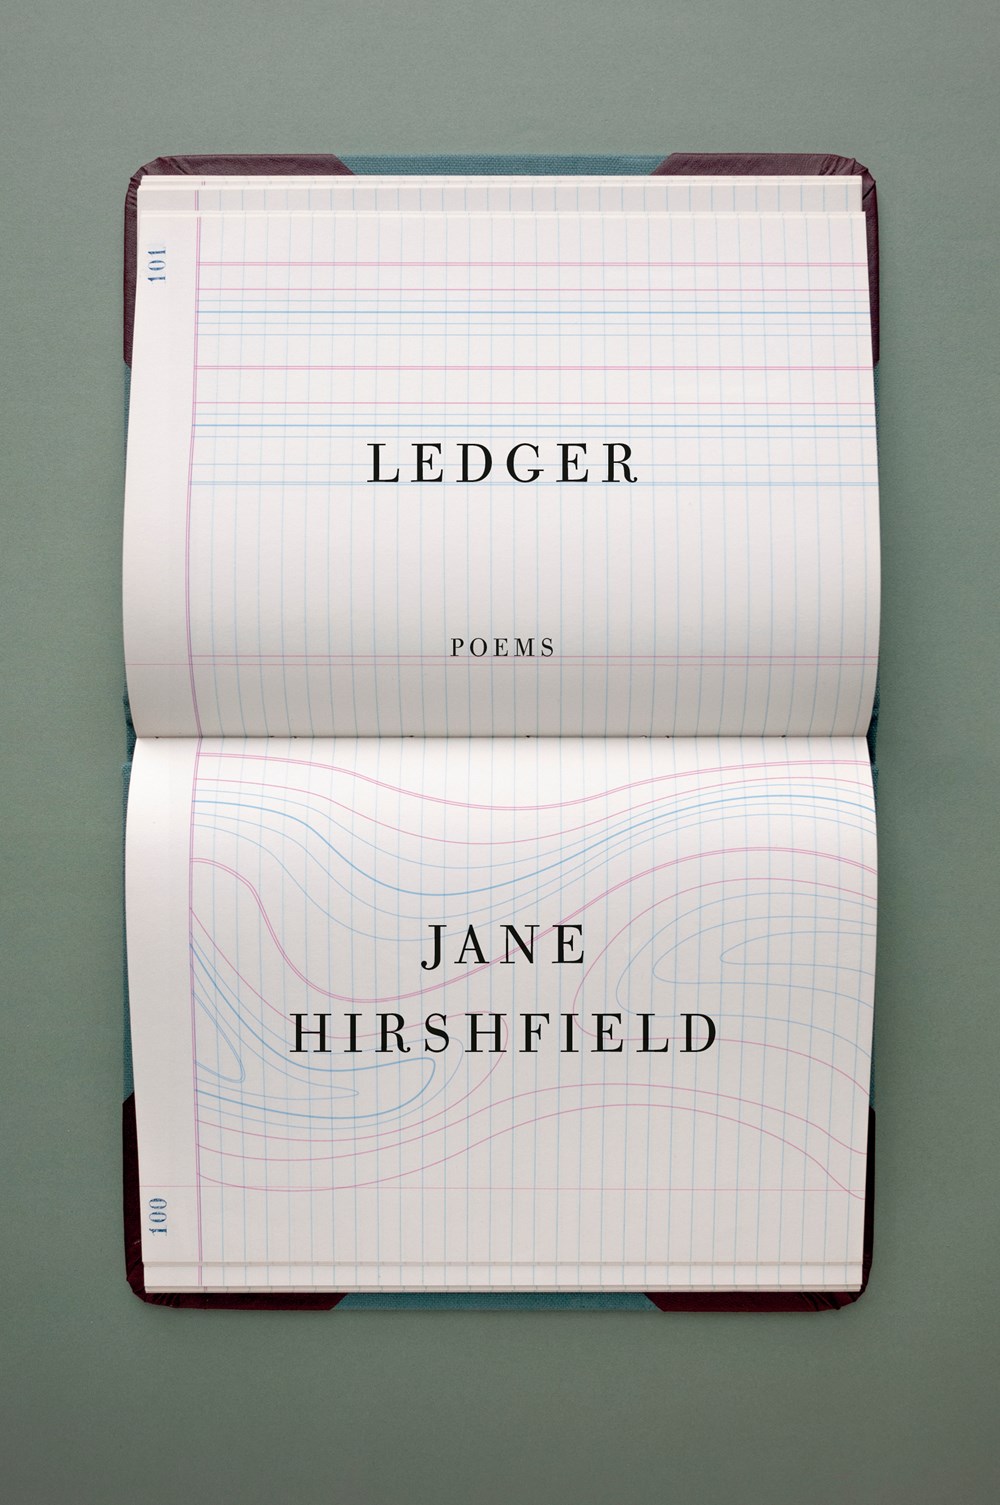 Ledger-book-cover-design-john-gall